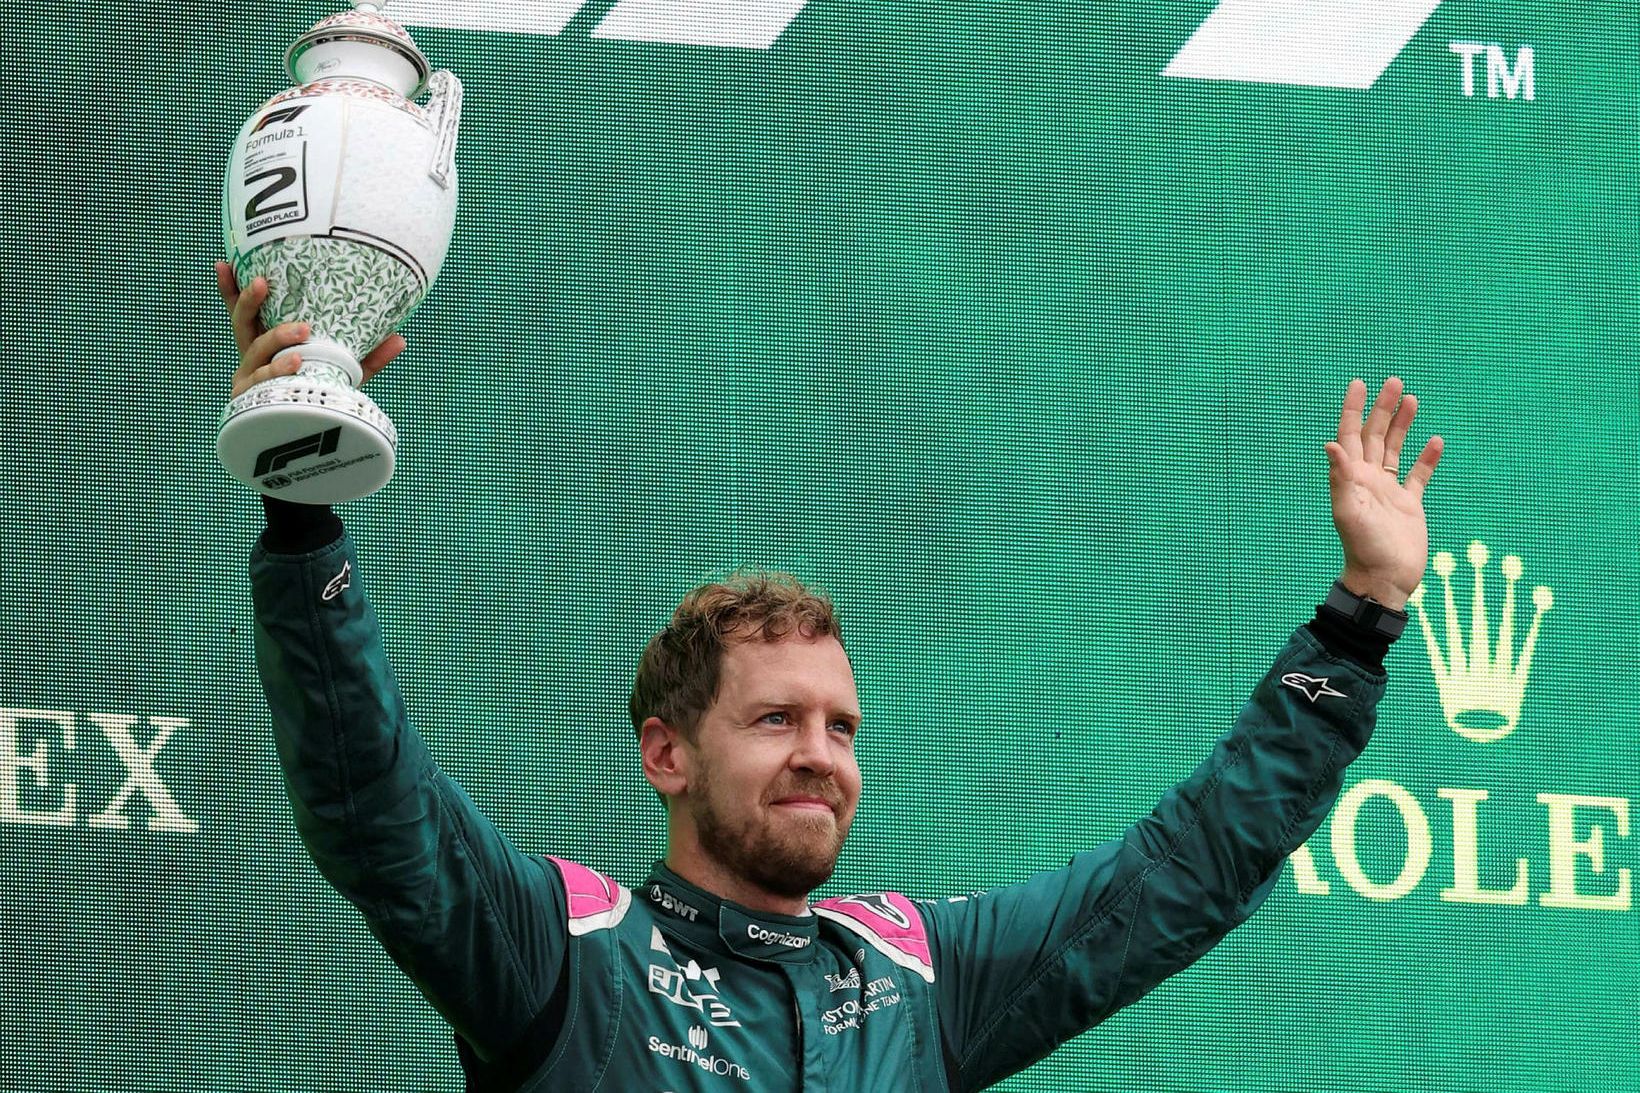 Sebastian Vettel, liðsmaður Aston Martin, á verðlaunapalli.